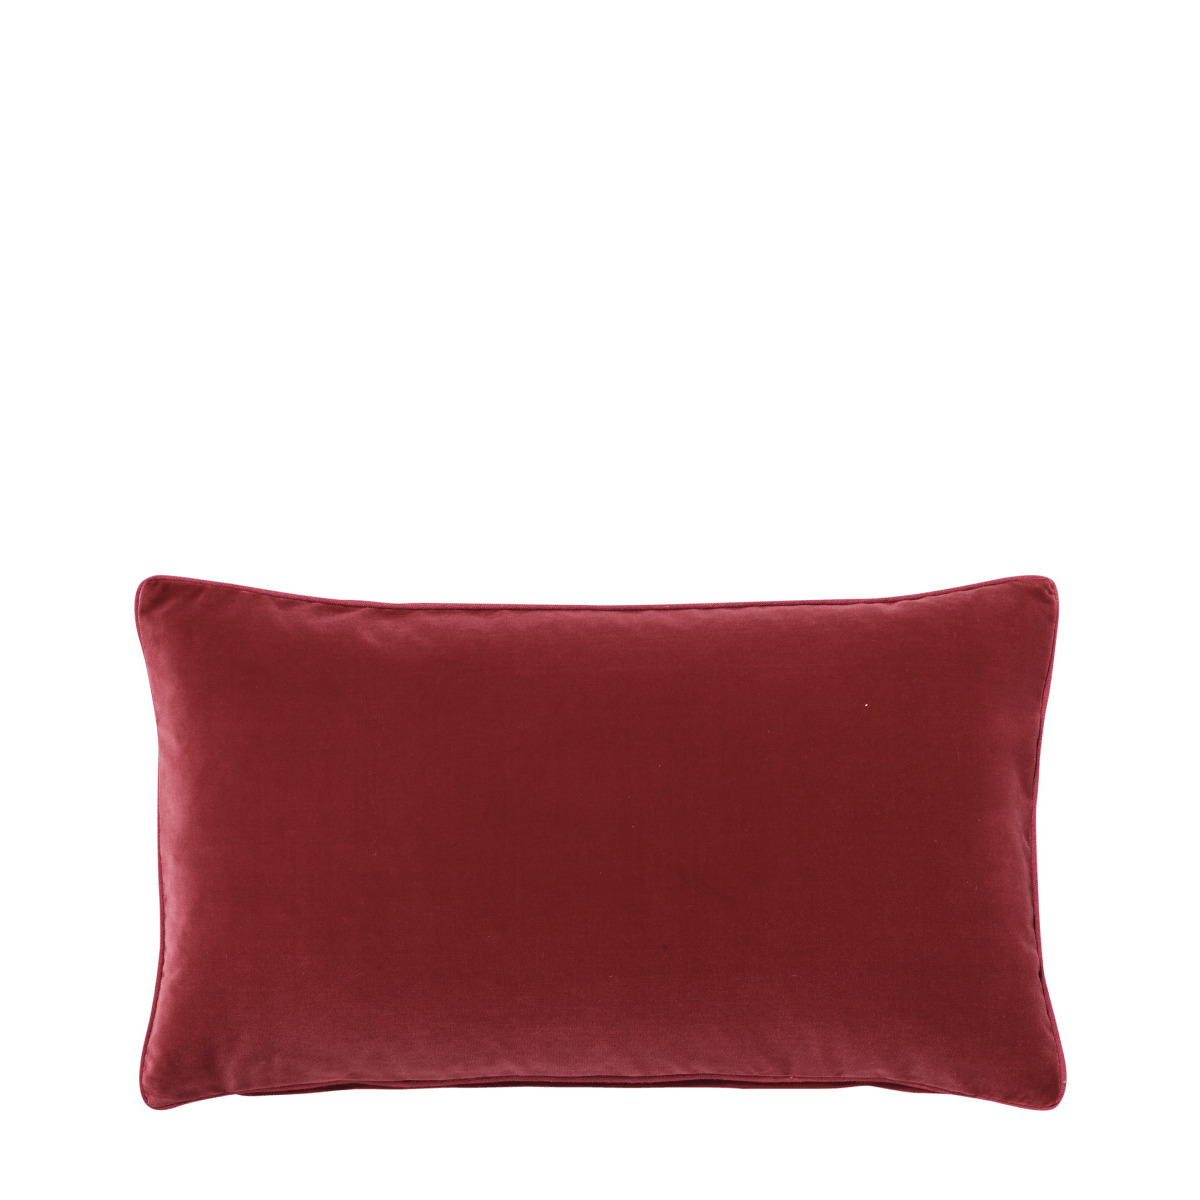 OKA, Small Plain Velvet Pillow Cover - Blood Orange, Cushion Covers, Velvet, Plain